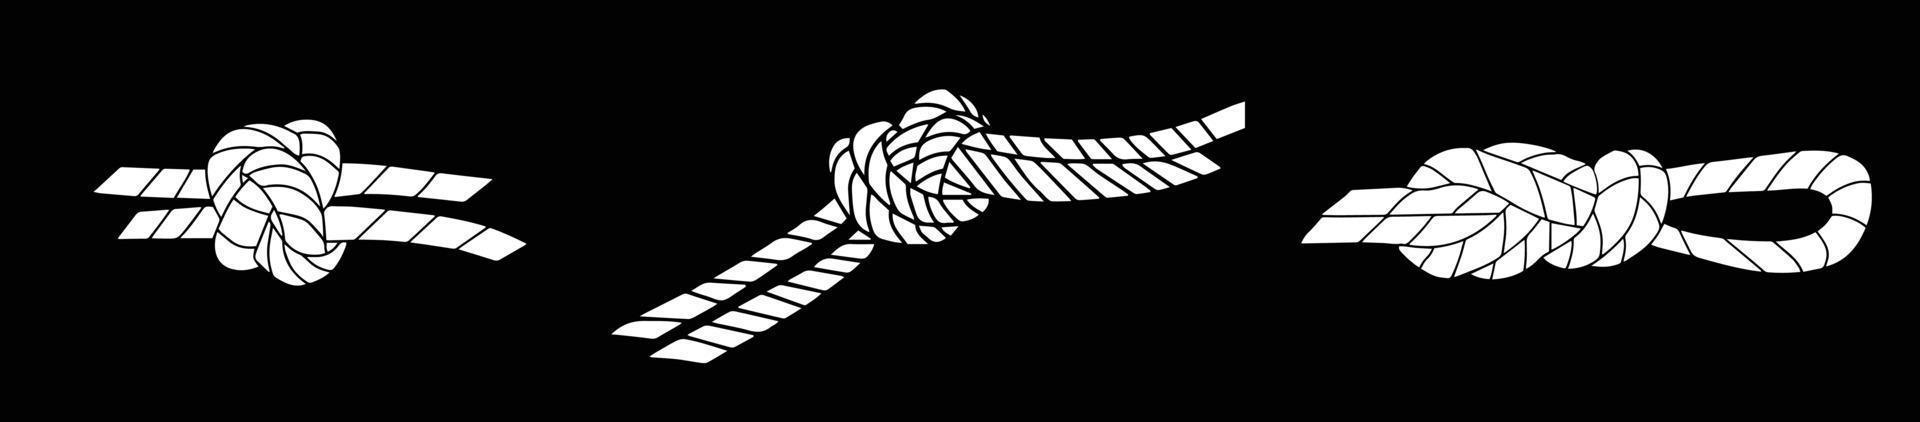 set van vector-elementen. witte touwen met knoop op zwarte achtergrond. voorraad vectorillustratie vector